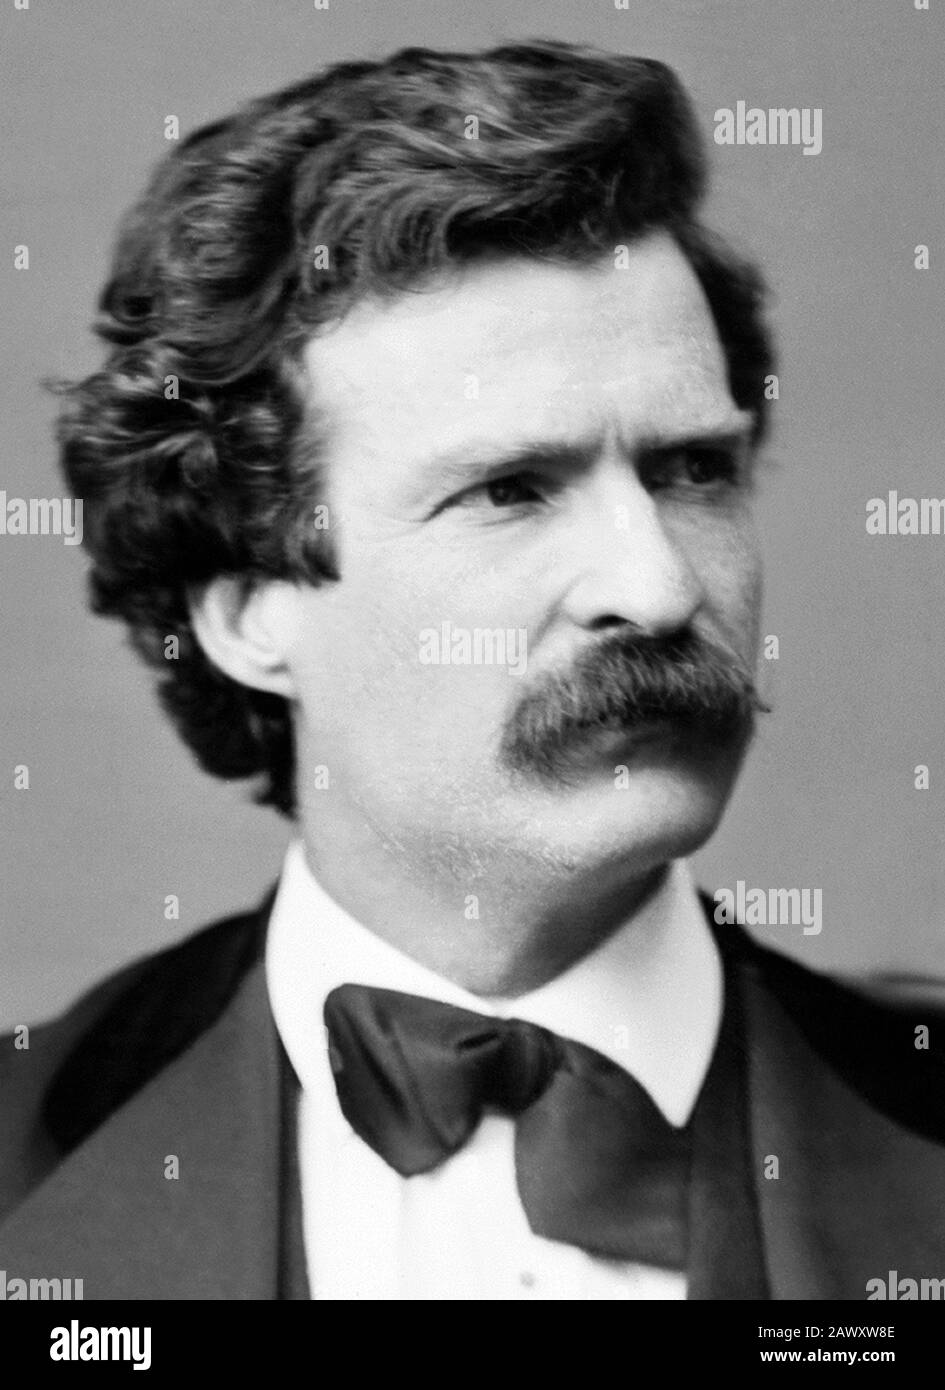 Photo de portrait vintage de l'écrivain et humoriste américain Samuel Langhorne Clemens (1835 – 1910), mieux connu par son nom de plume de Mark Twain. Photo de Brady - Pratique prise à Washington DC en 1871. Banque D'Images